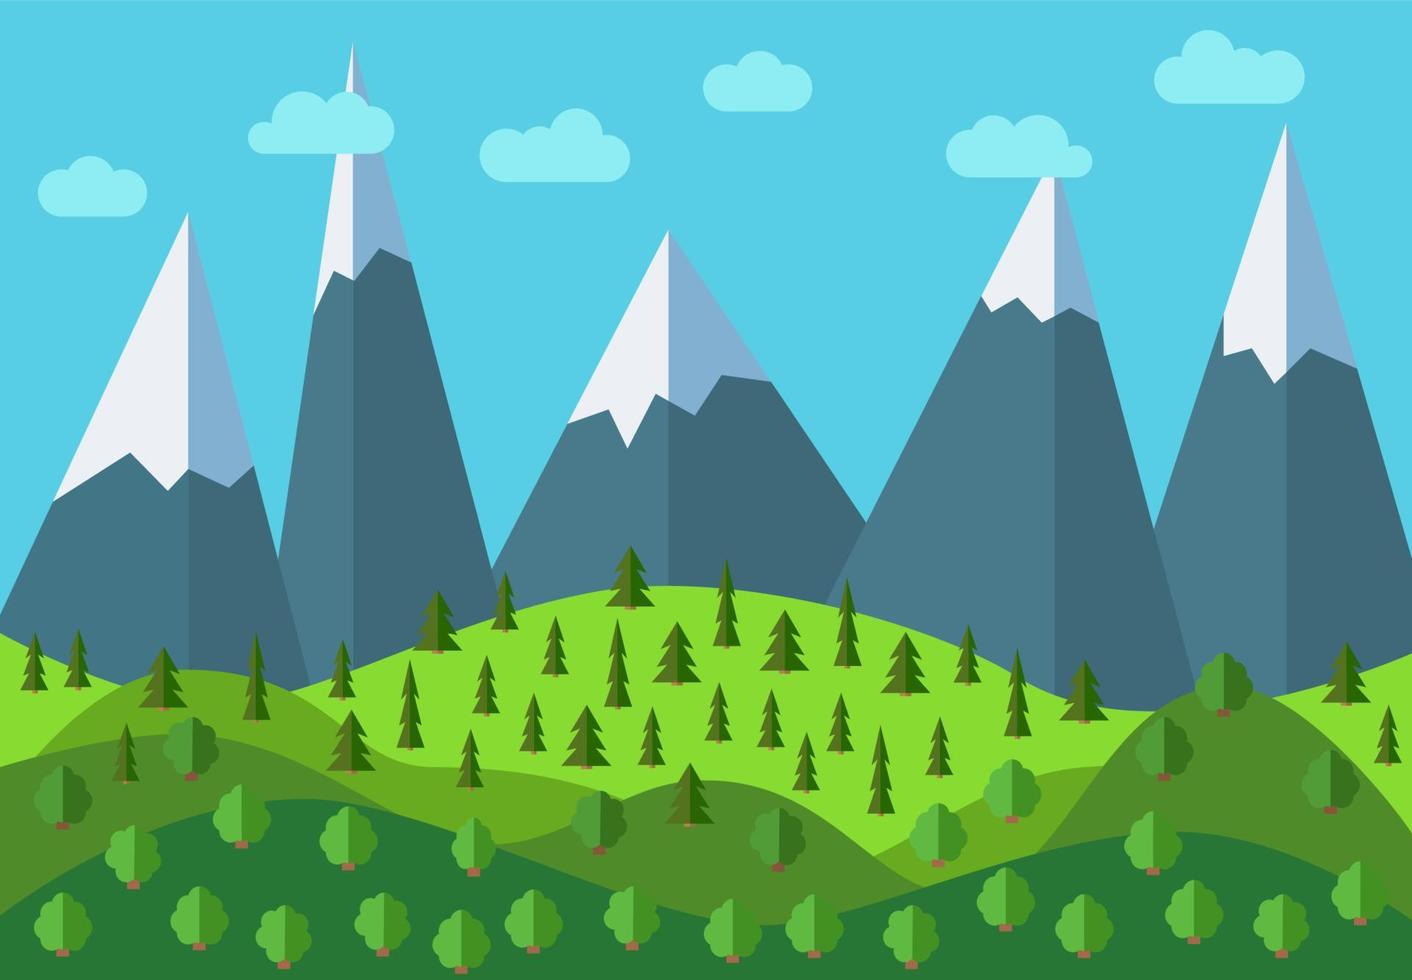 vector paisagem panorâmica dos desenhos animados da montanha. paisagem natural em estilo simples com céu azul, nuvens, árvores, colinas e montanhas com neve nos picos.